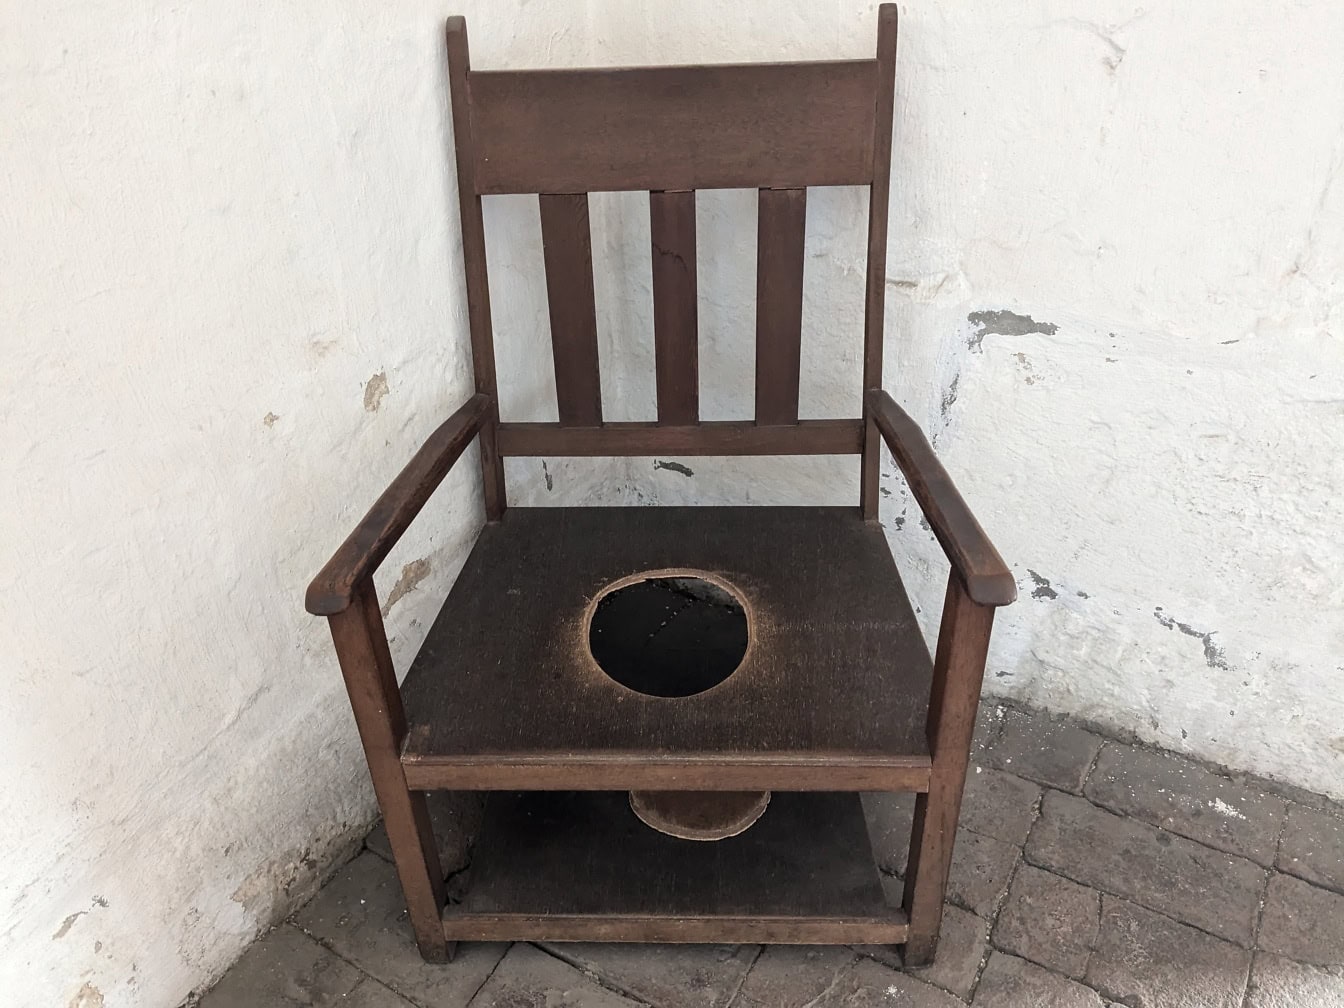 Stará dřevěná židle s otvorem uprostřed používaná jako toaleta v klášteře Santa Catalina v Arequipě v Peru